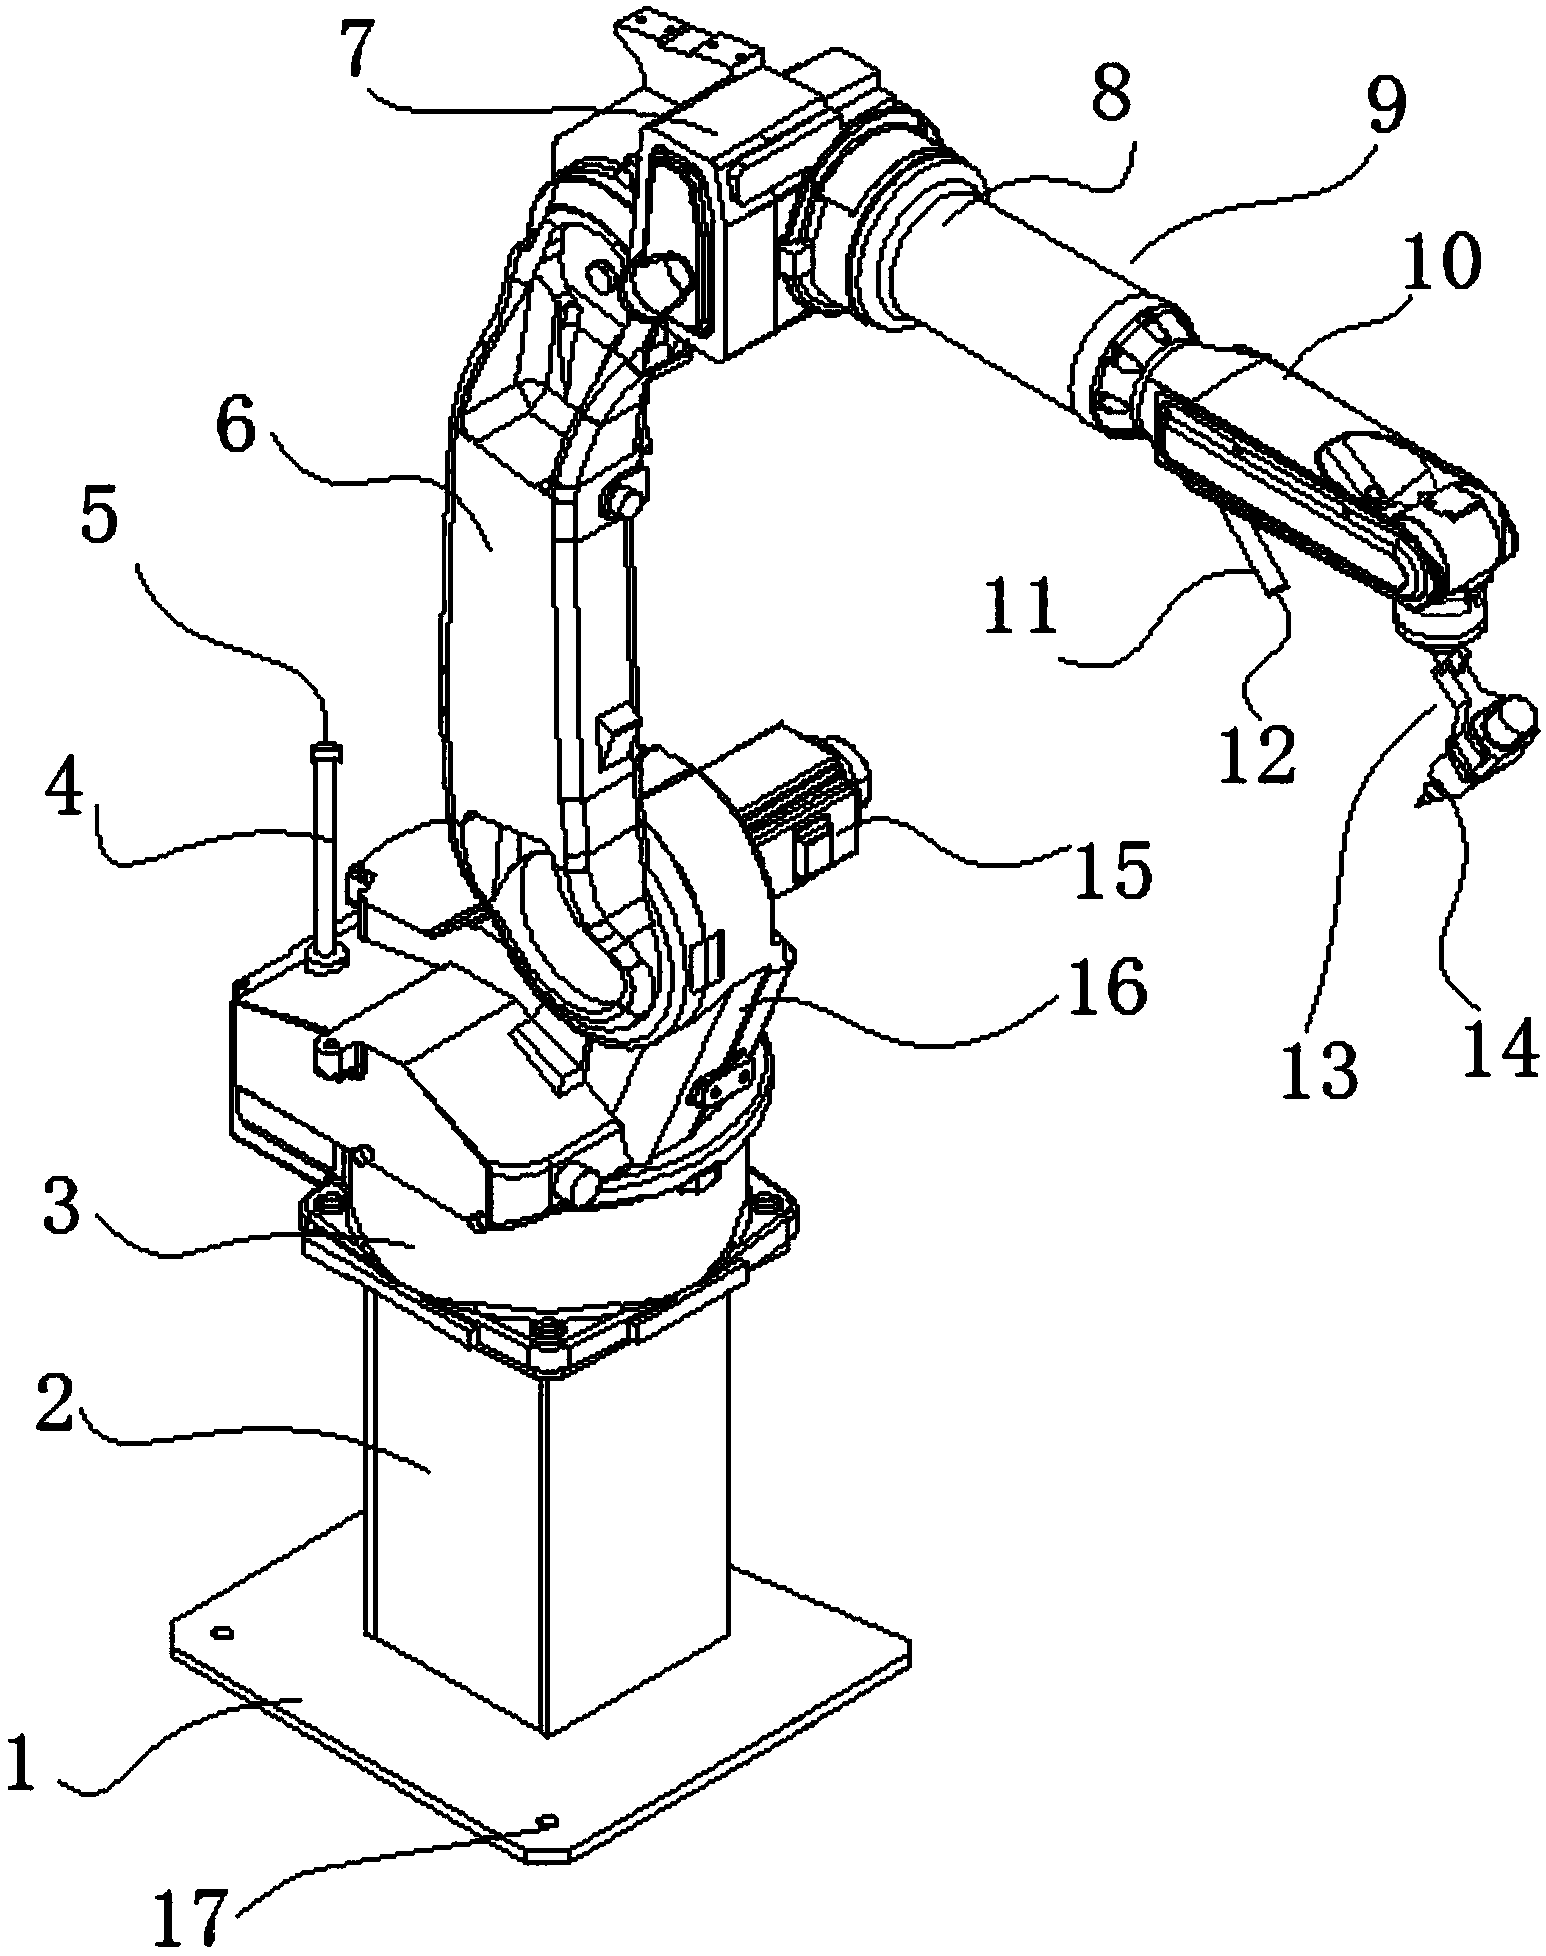 焊接机器人结构简图图片